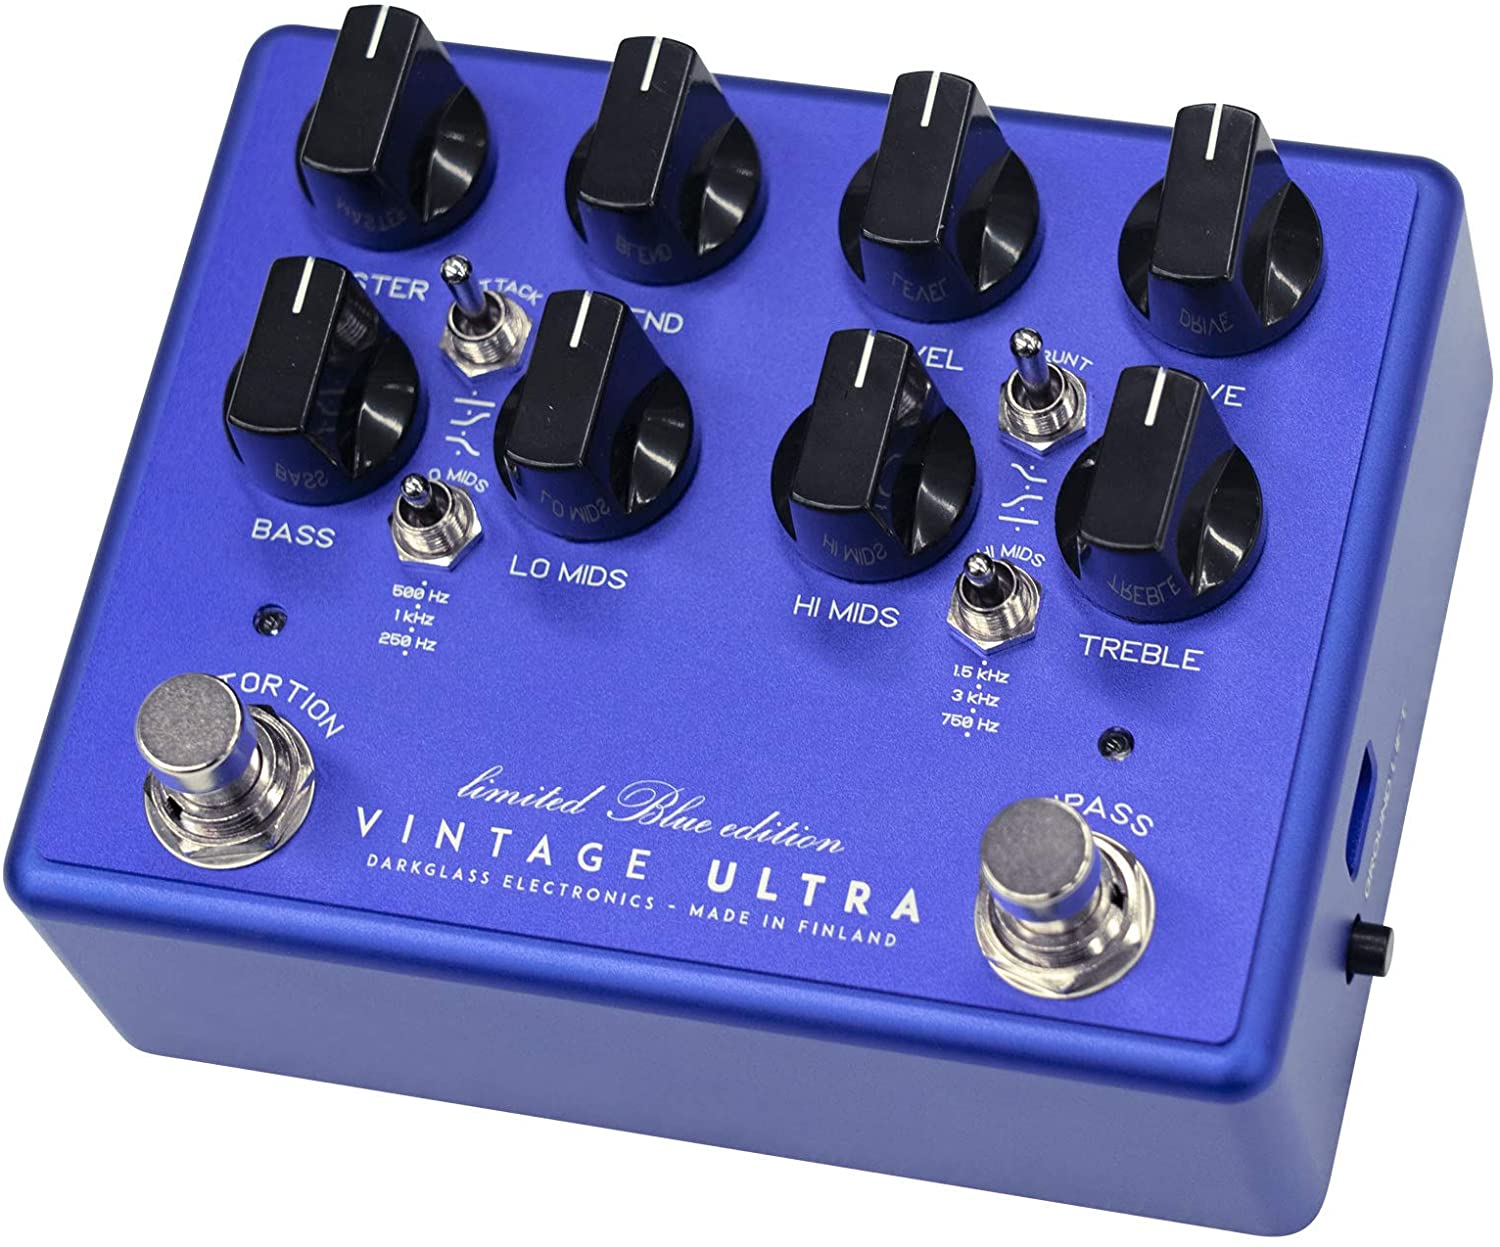 VINTAGE ULTRA V2 Limited Blue Edition